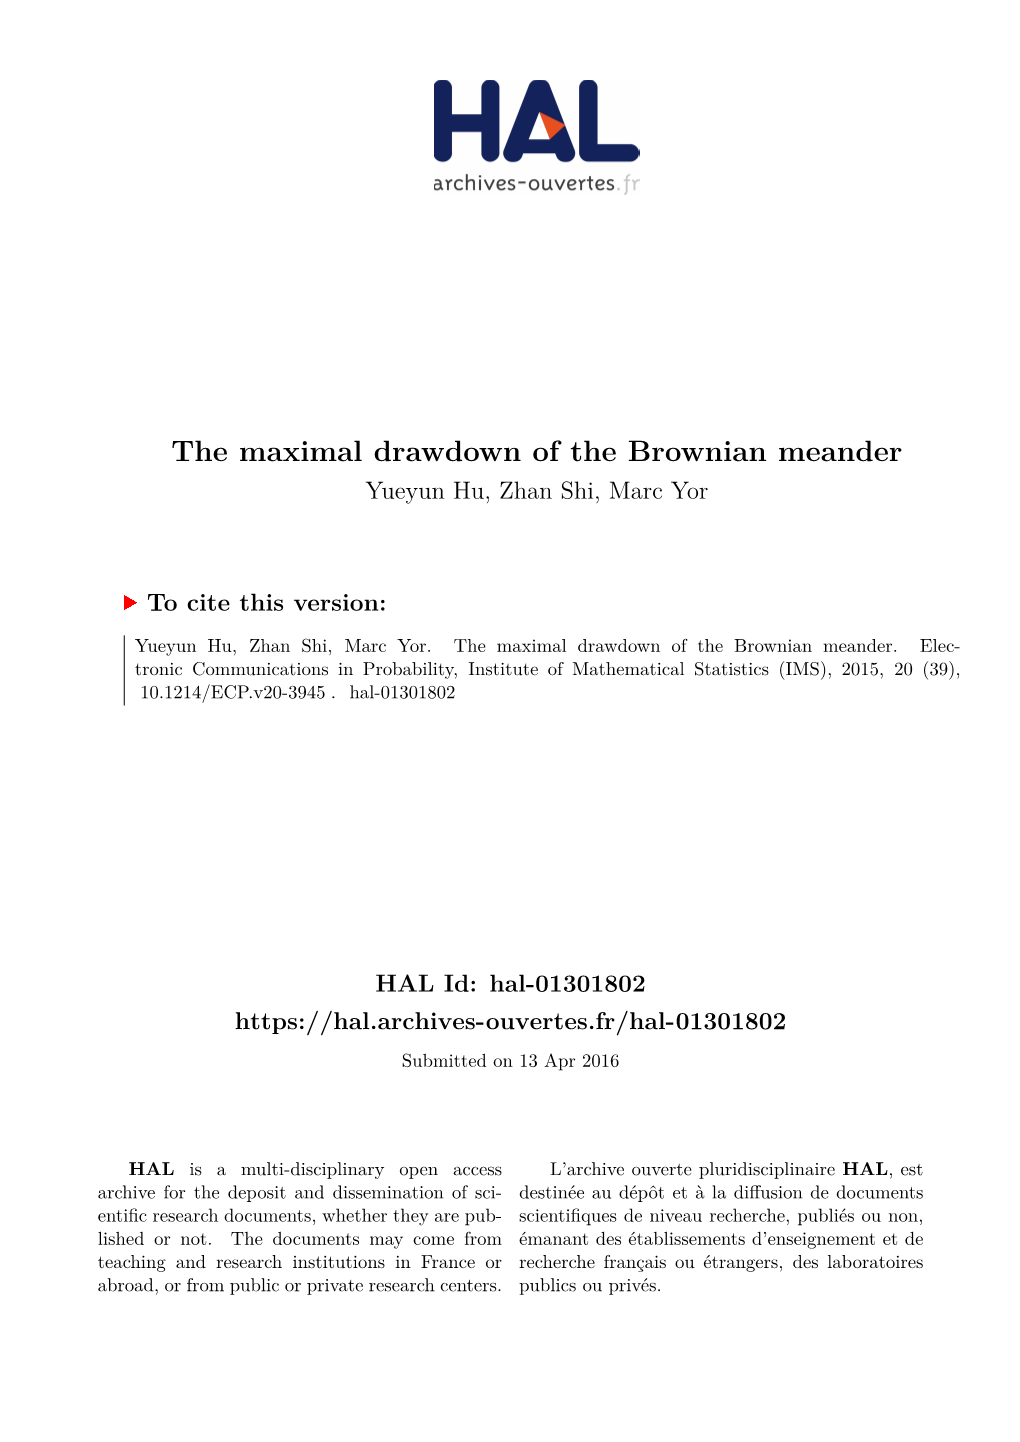 The Maximal Drawdown of the Brownian Meander Yueyun Hu, Zhan Shi, Marc Yor